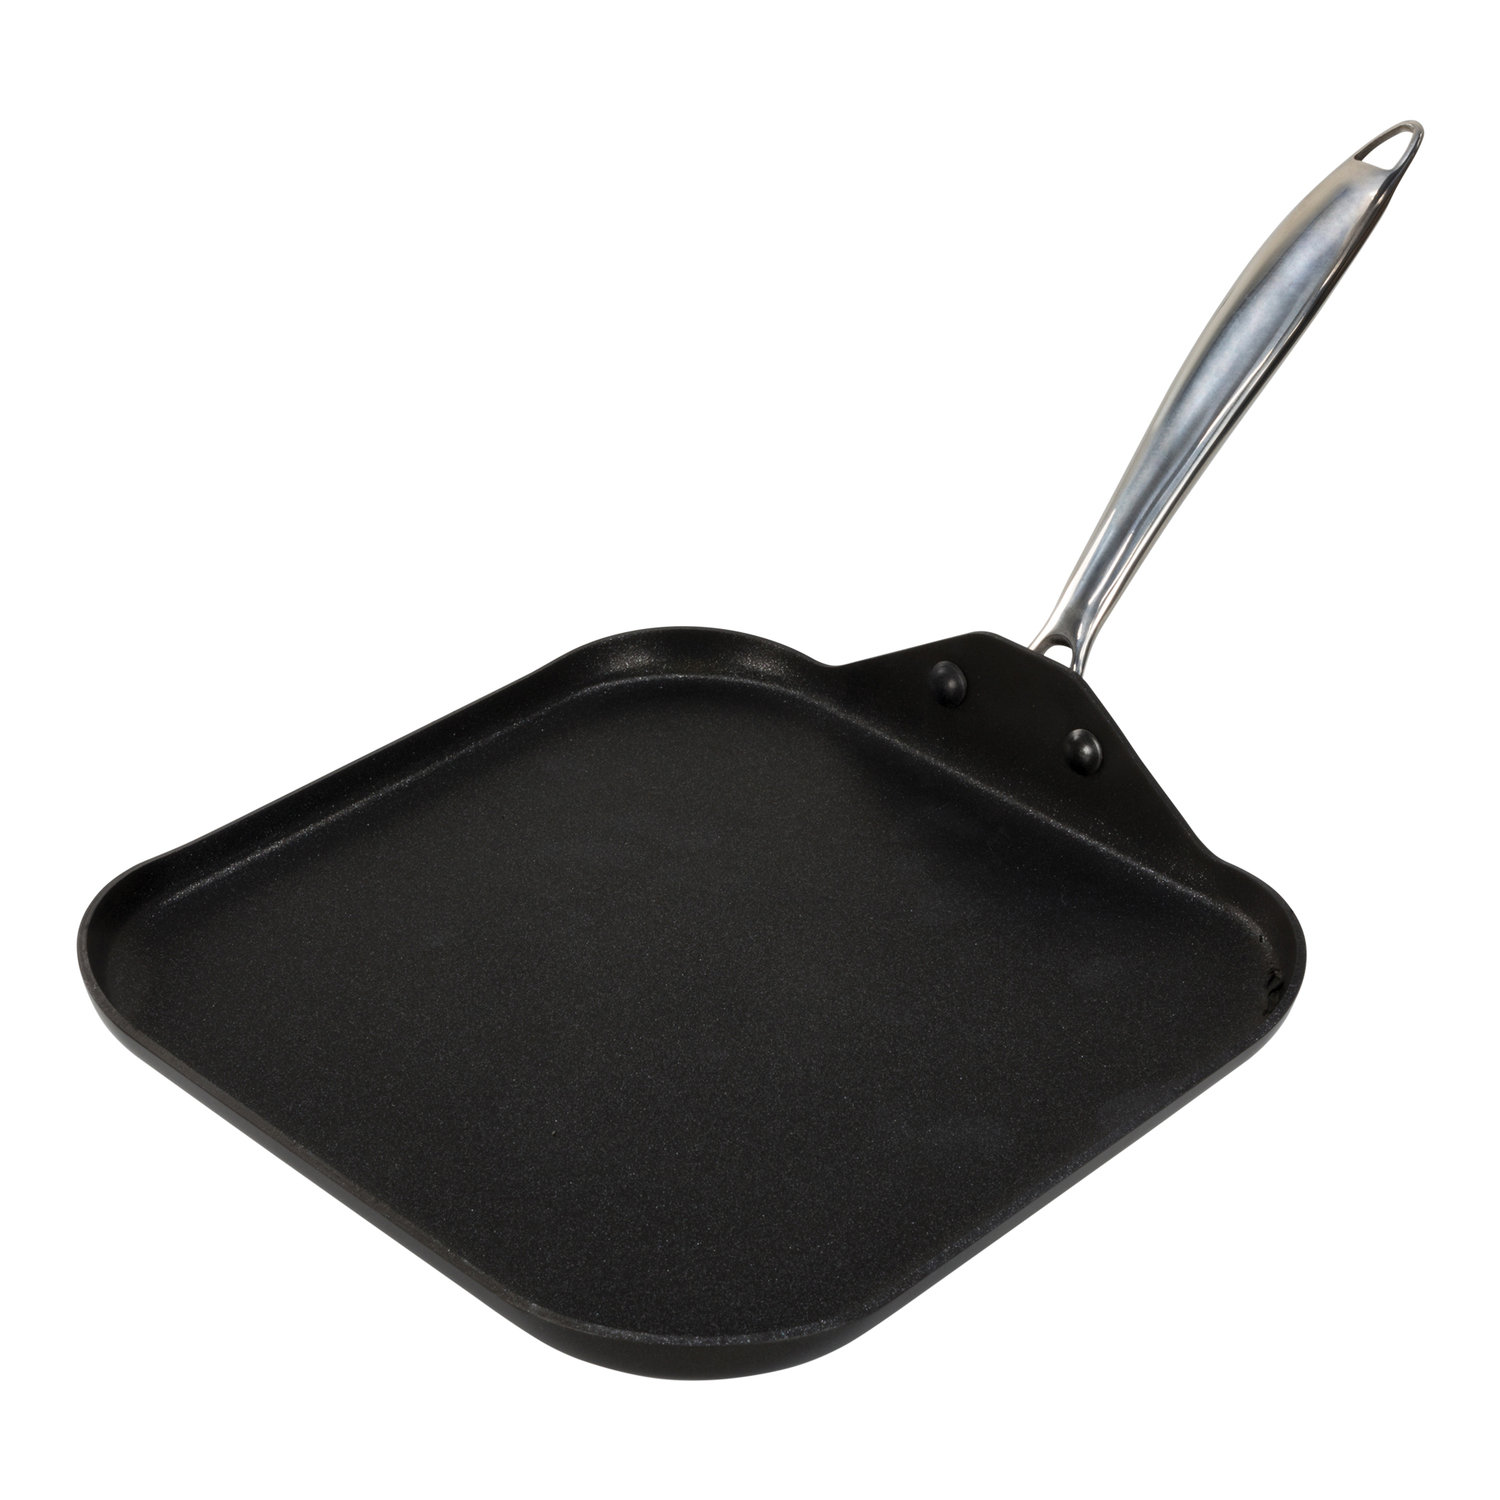 Double Backsplash Griddle, Cast Aluminum Cookware